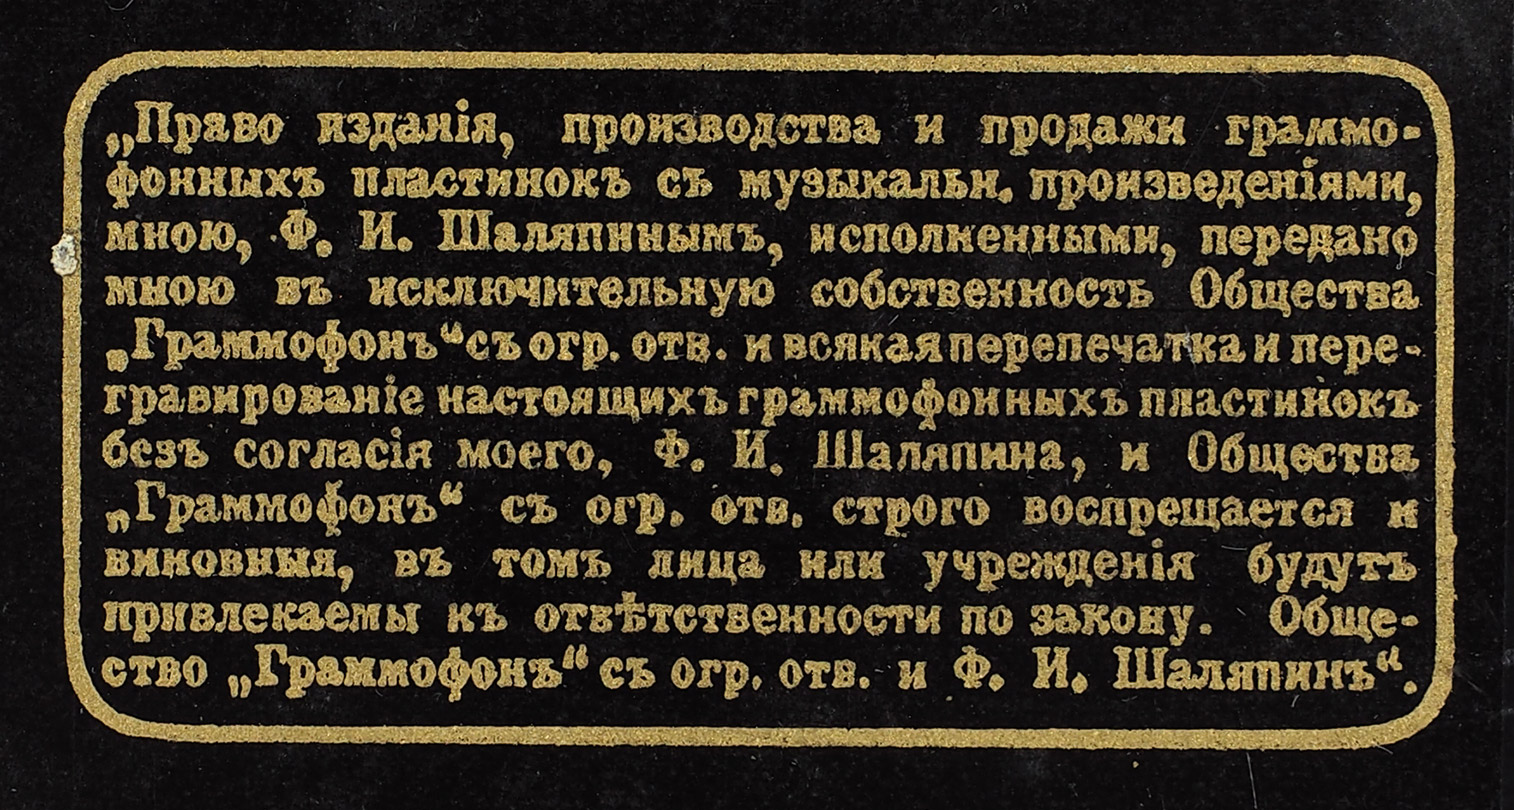 Ценный экспонат из фонда «Кинофонодокументы» Азовского музея-заповедника